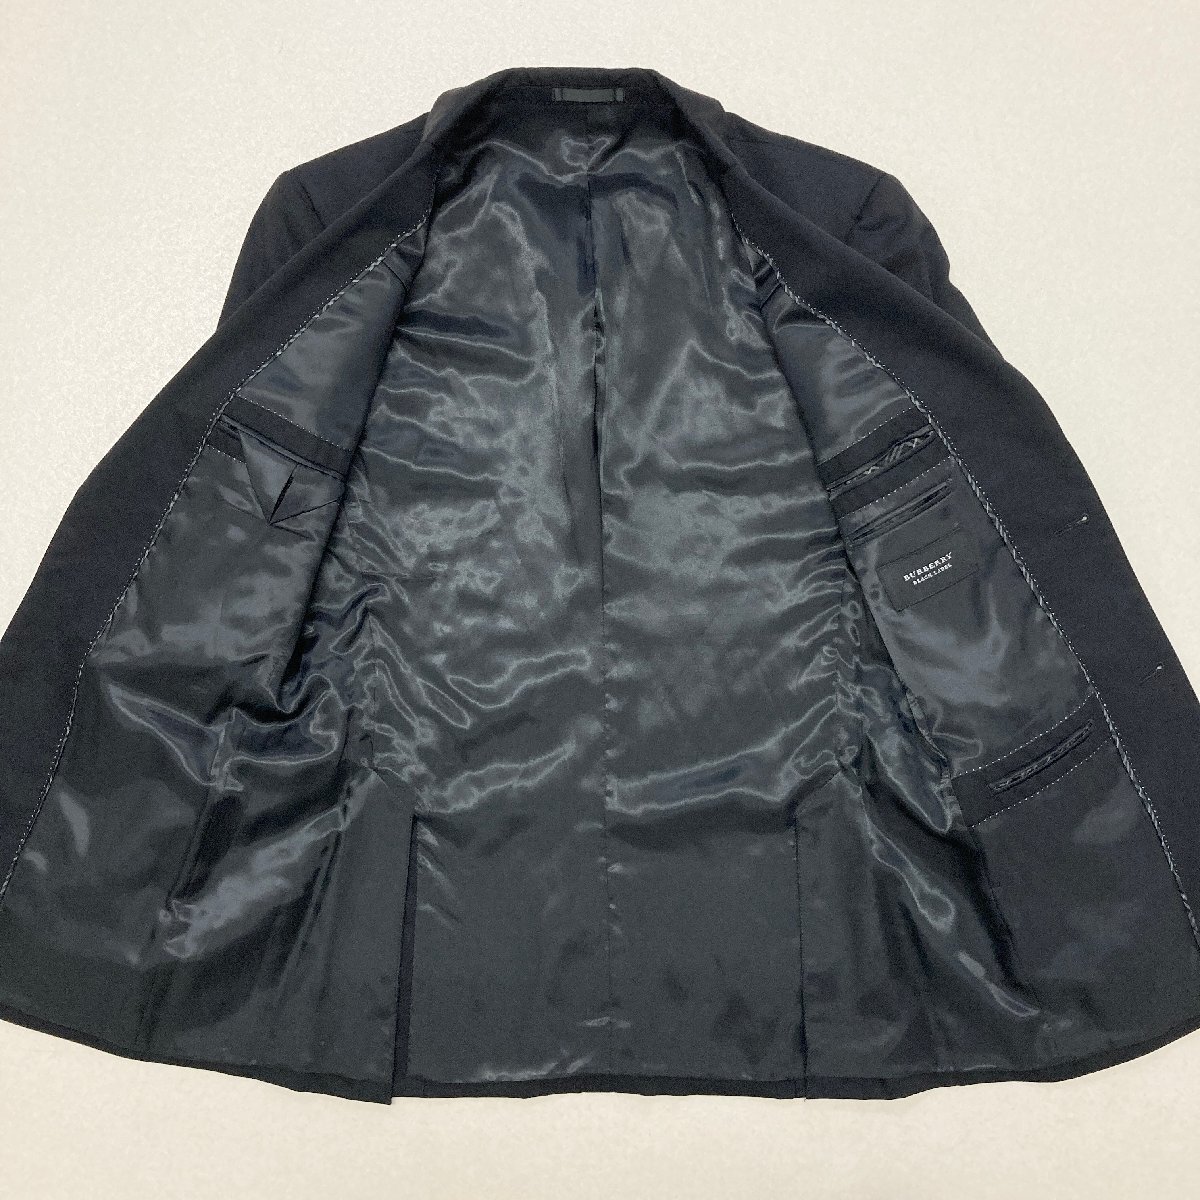 ●BURBERRY BLACK LABEL バーバリー ブラックレーベル セットアップ スーツ ジャケット パンツ 三陽商会 メンズ38R ブラック 1.04kg●の画像6